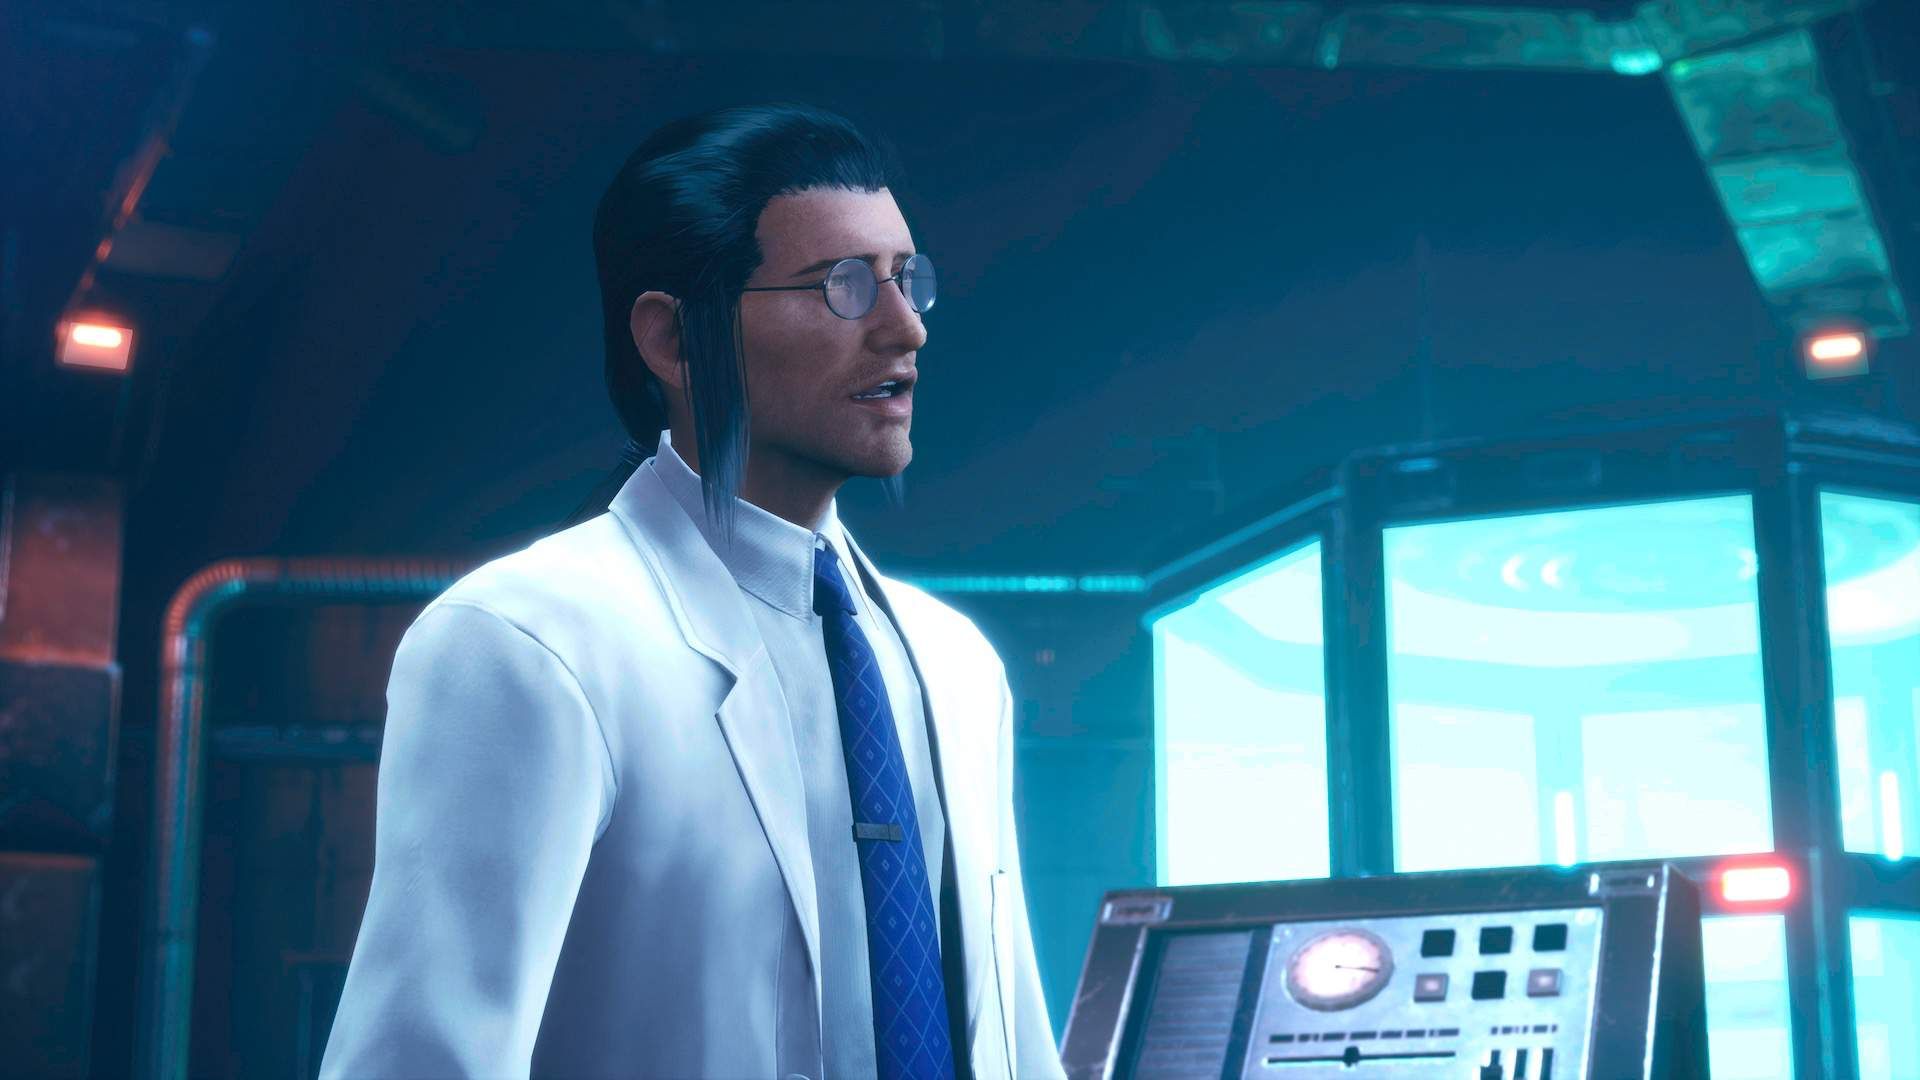 Professor Hojo in Shinra's lab in Crisis Core: Final Fantasy VII Reunion.